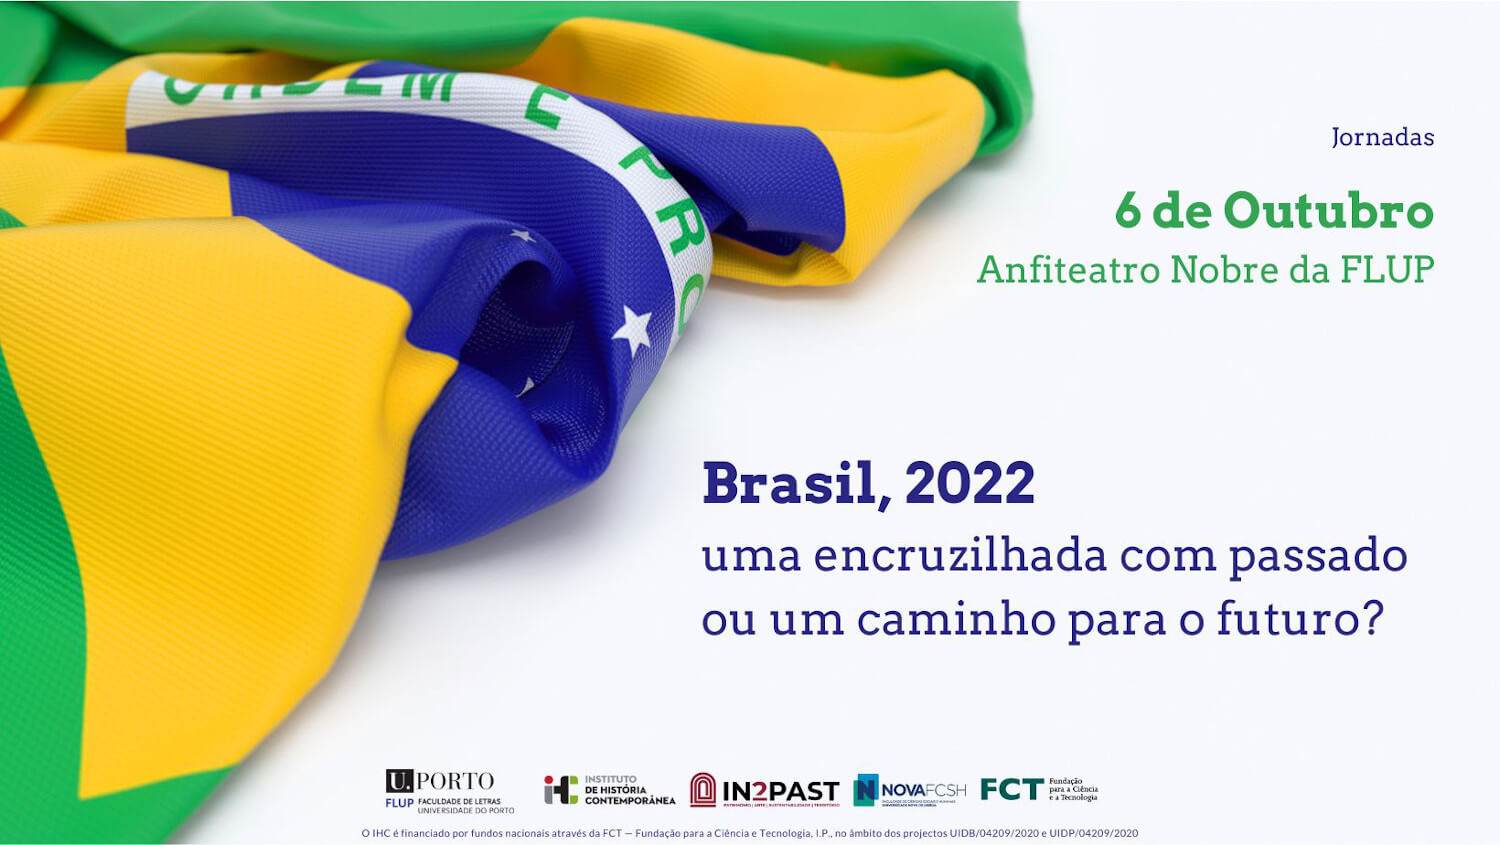 Cartaz das jornadas "Brasil, 2022: uma encruzilhada com passado ou um caminho para o futuro?". 6 de Outubro no Anfiteatro Nobre da Faculdade de Letras da Universidade do Porto